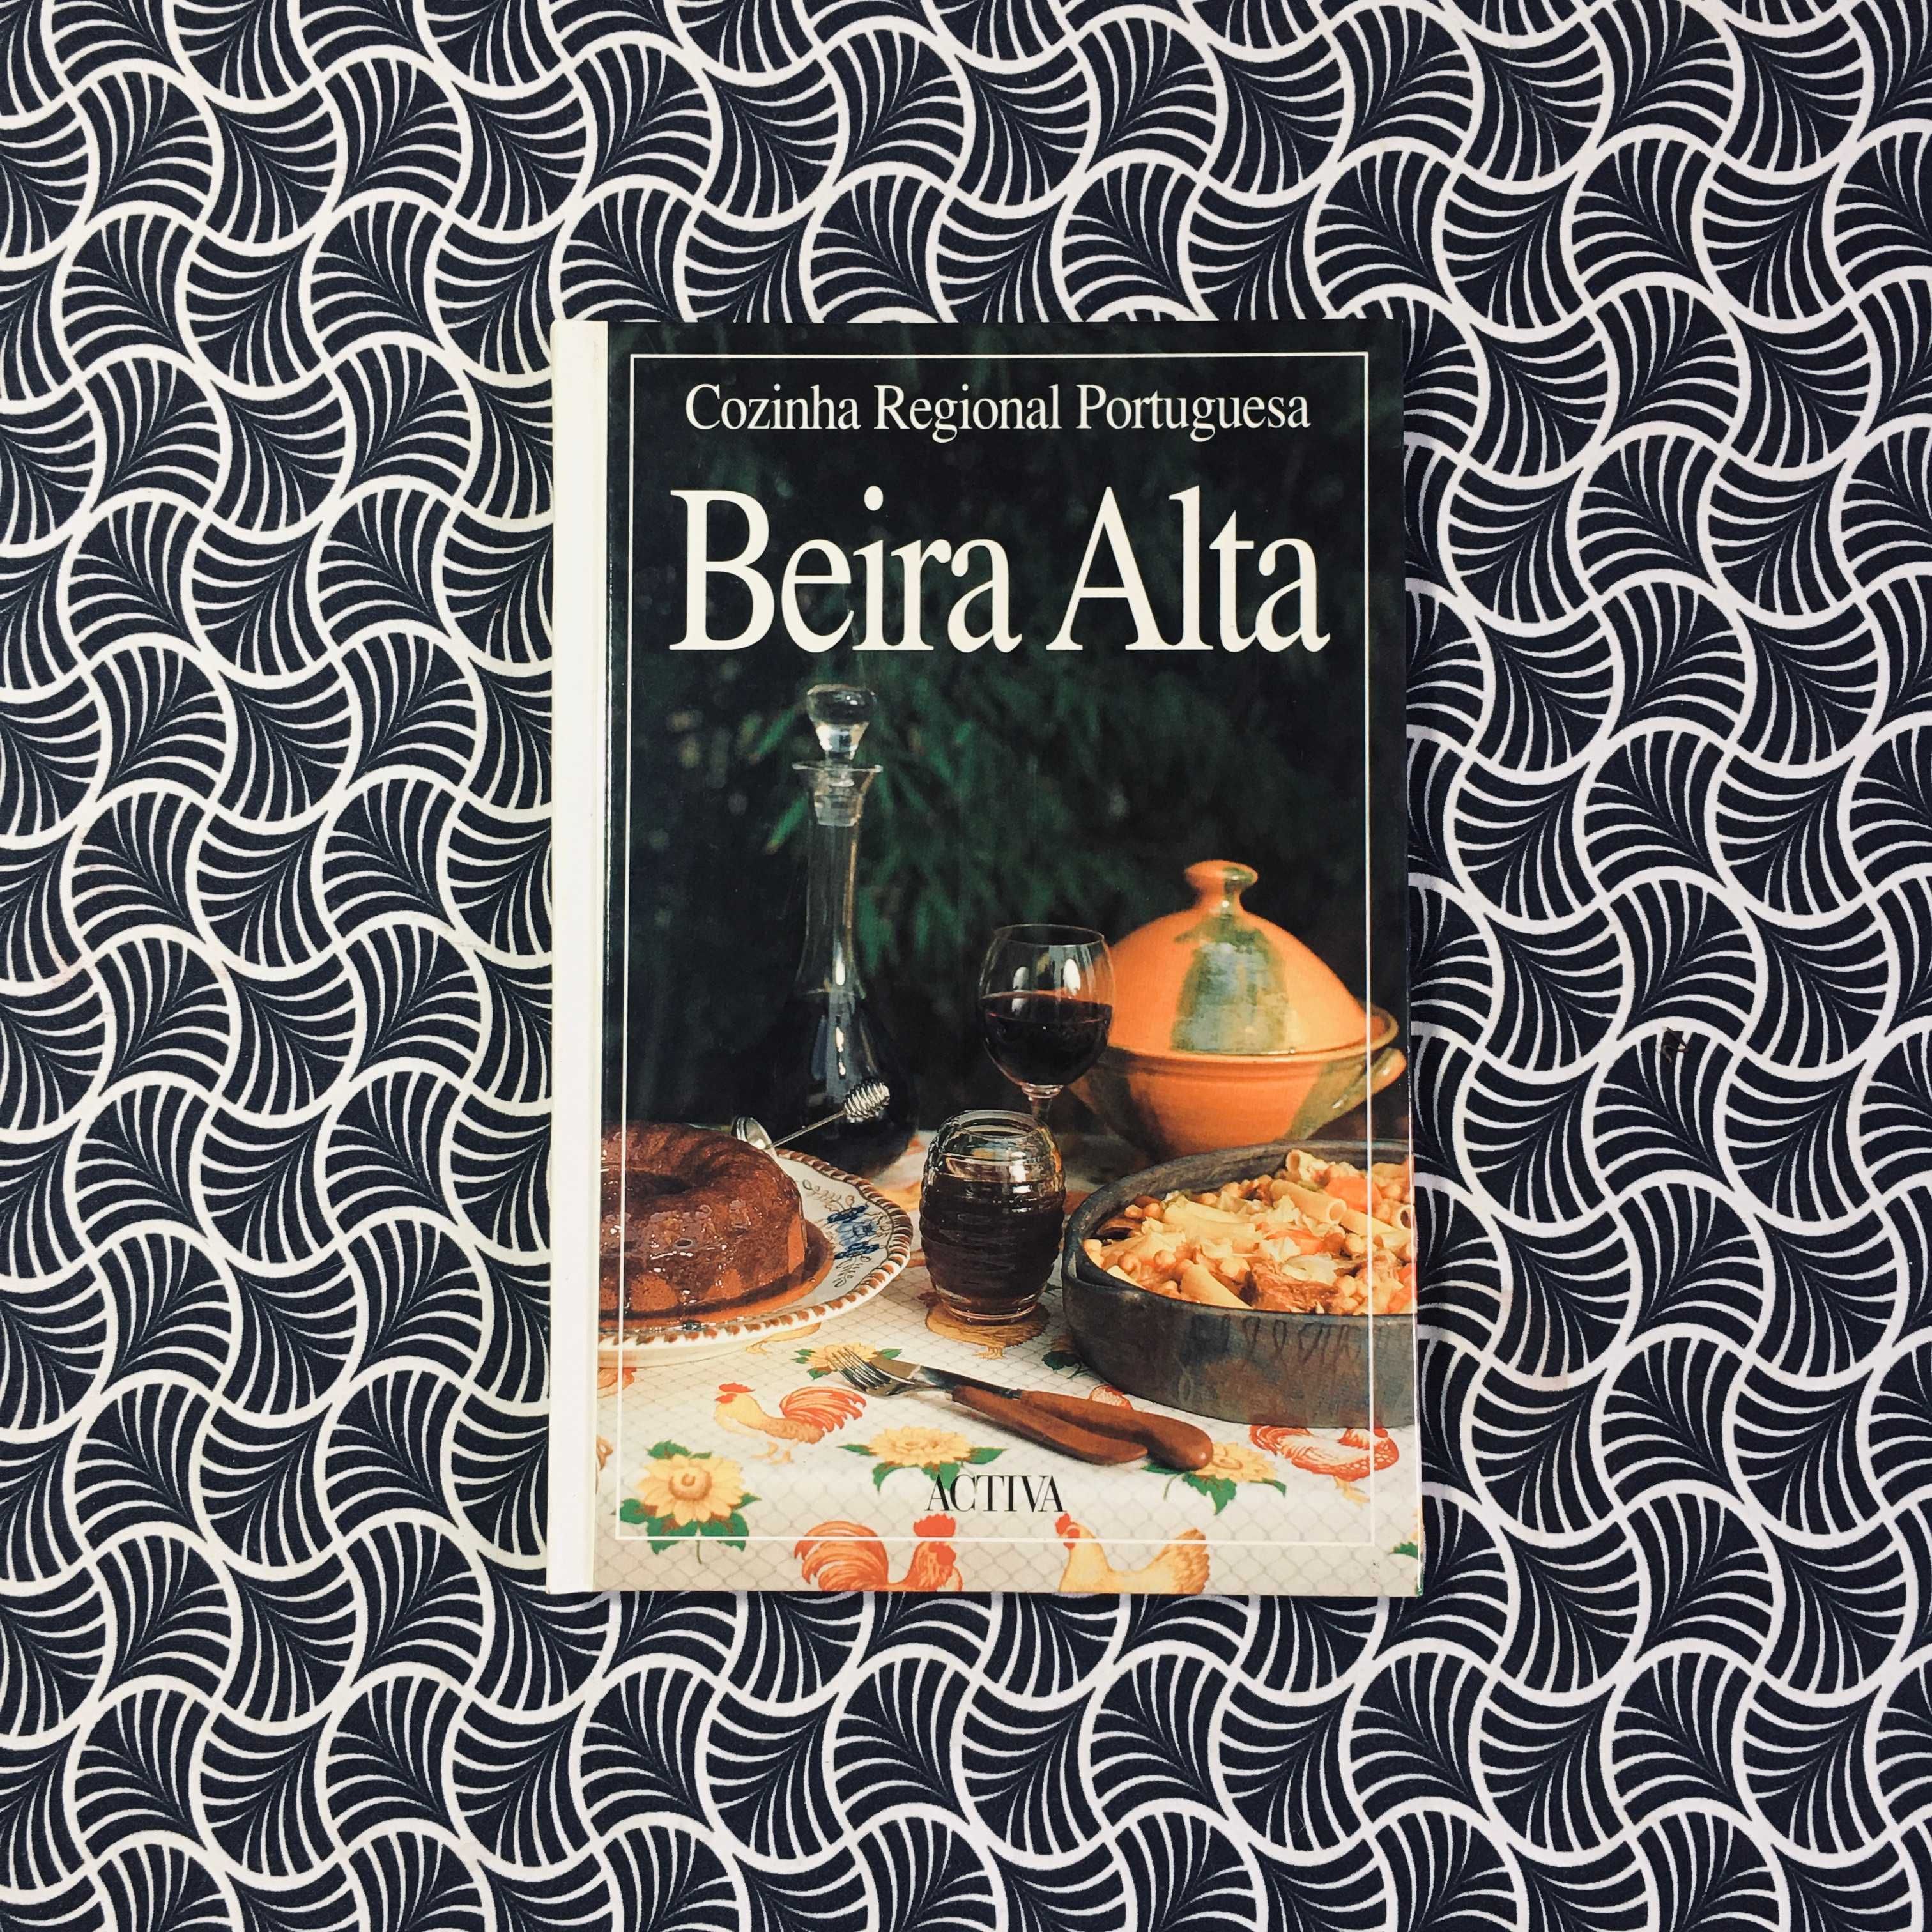 Cozinha Regional Portuguesa: Beira Alta